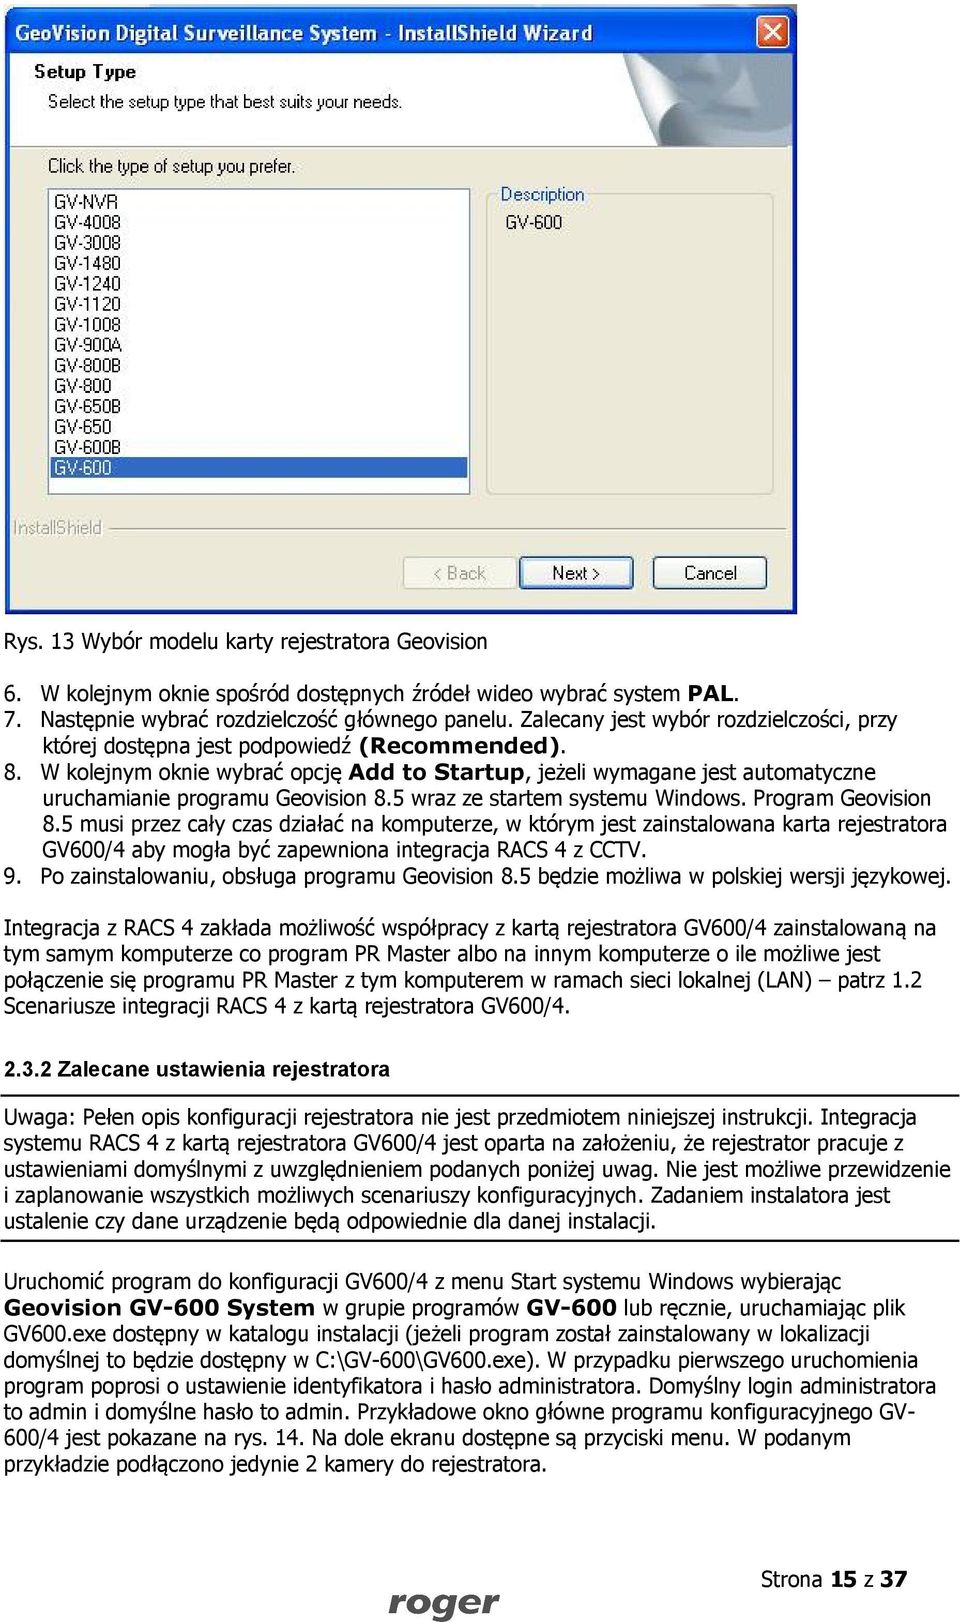 W kolejnym oknie wybrać opcję Add to Startup, jeżeli wymagane jest automatyczne uruchamianie programu Geovision 8.5 wraz ze startem systemu Windows. Program Geovision 8.